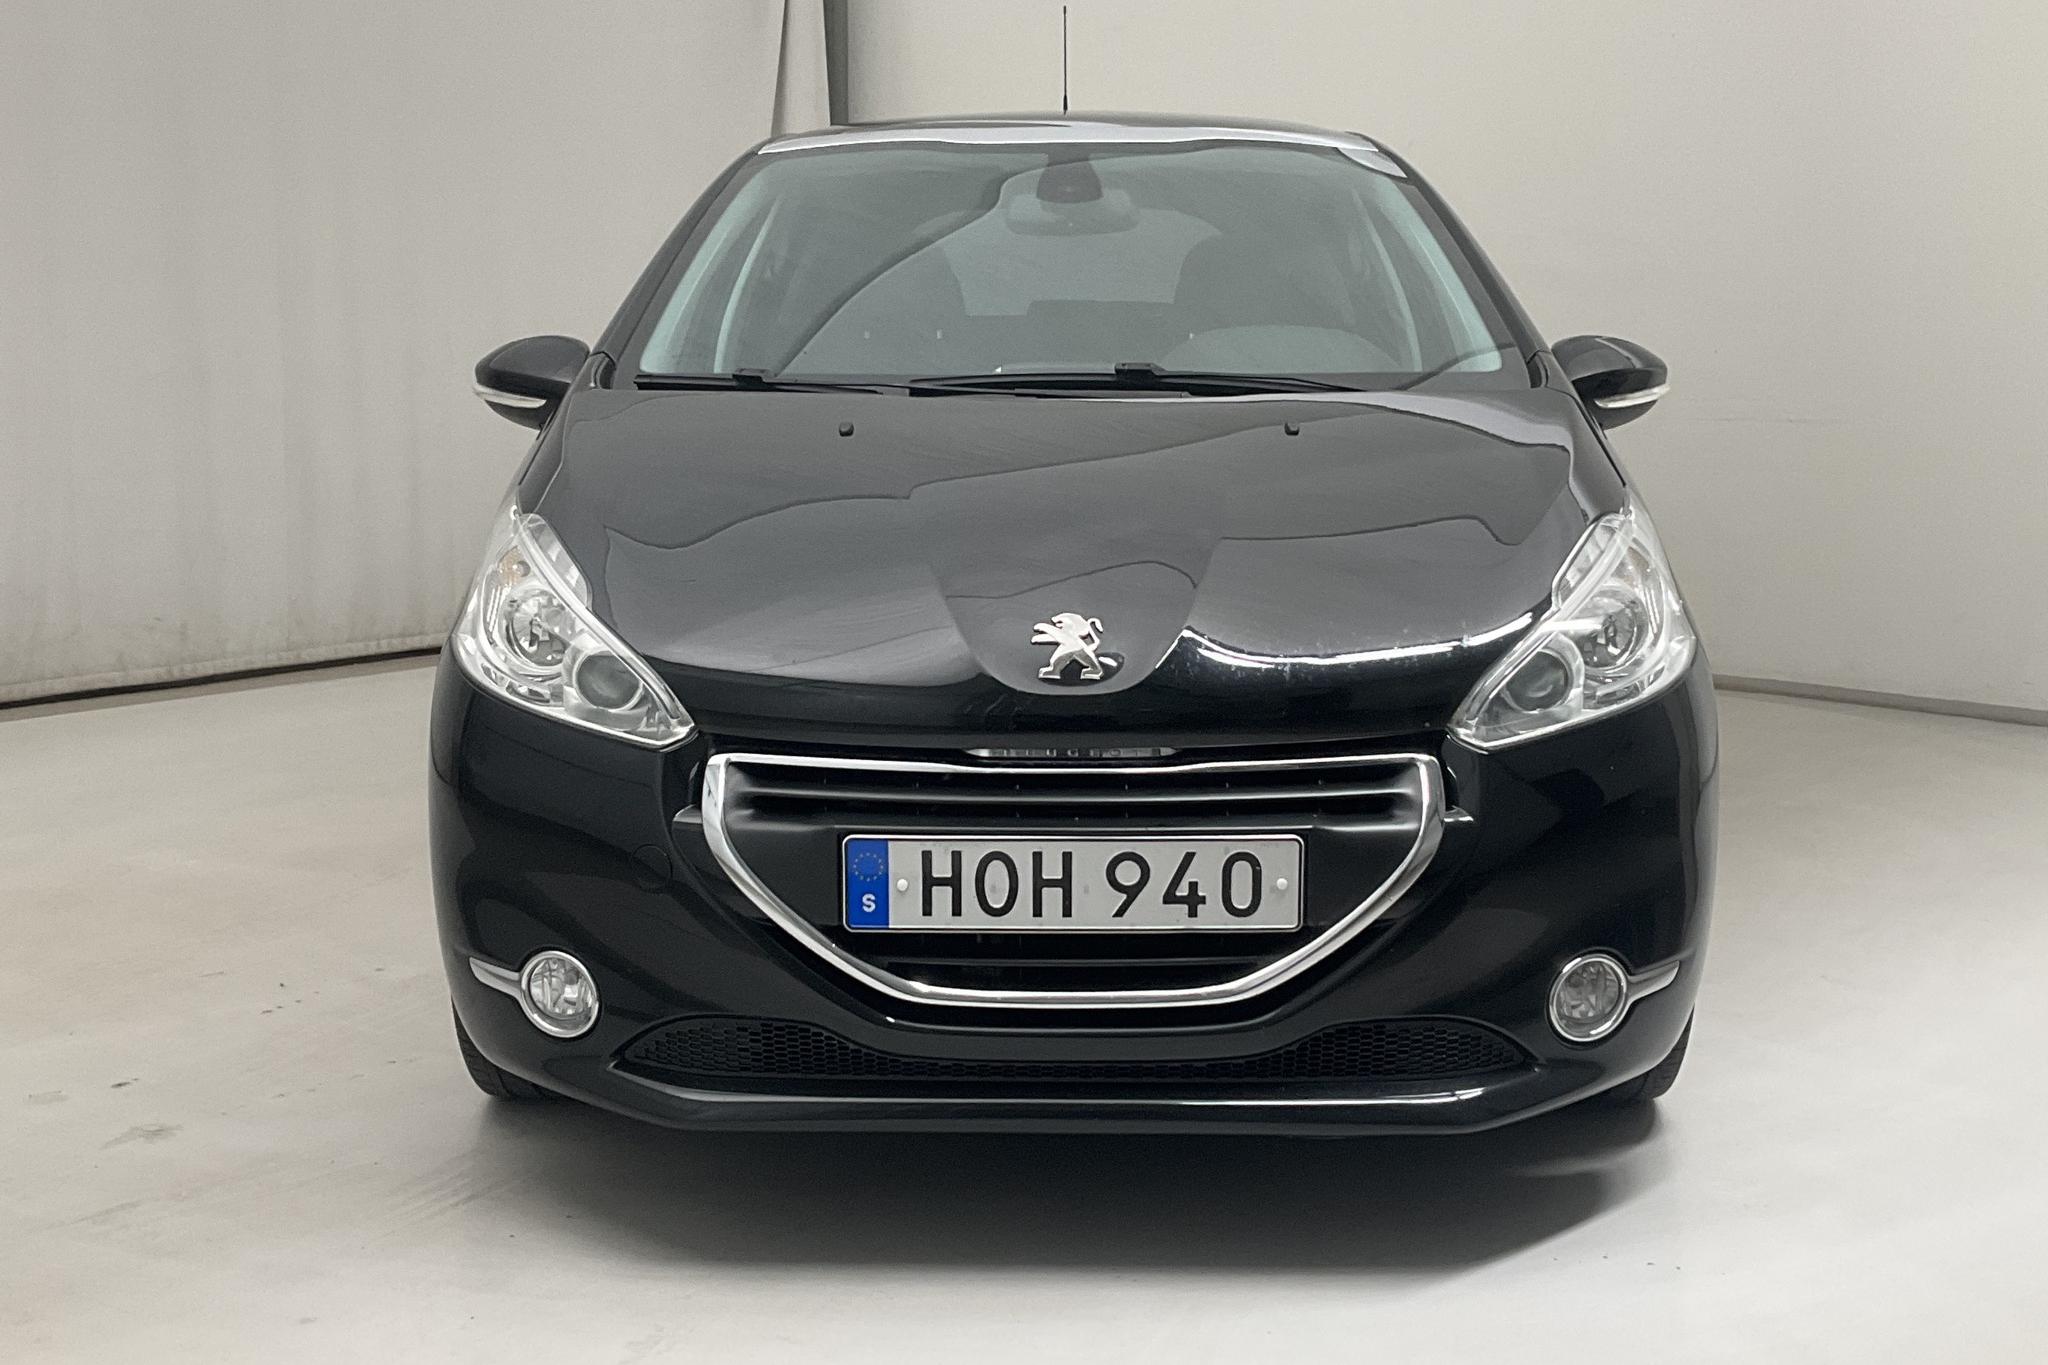 Peugeot 208 1.6 VTi 5dr (120hk) - 10 957 mil - Manuell - svart - 2015